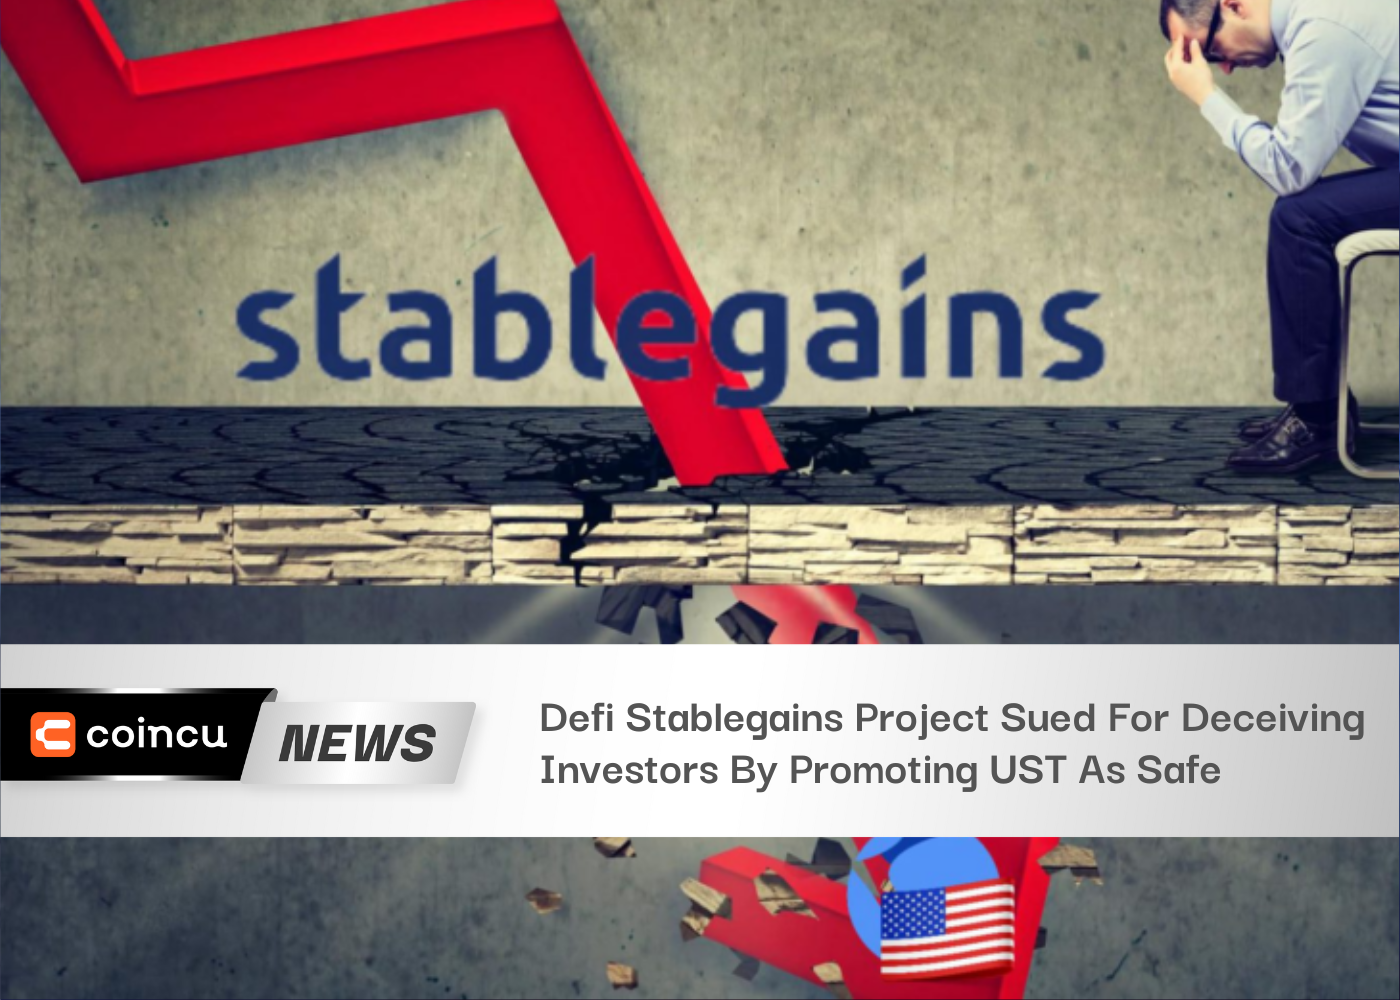 На проект Defi Stablegains подали в суд за обман инвесторов, продвигая UST как безопасный